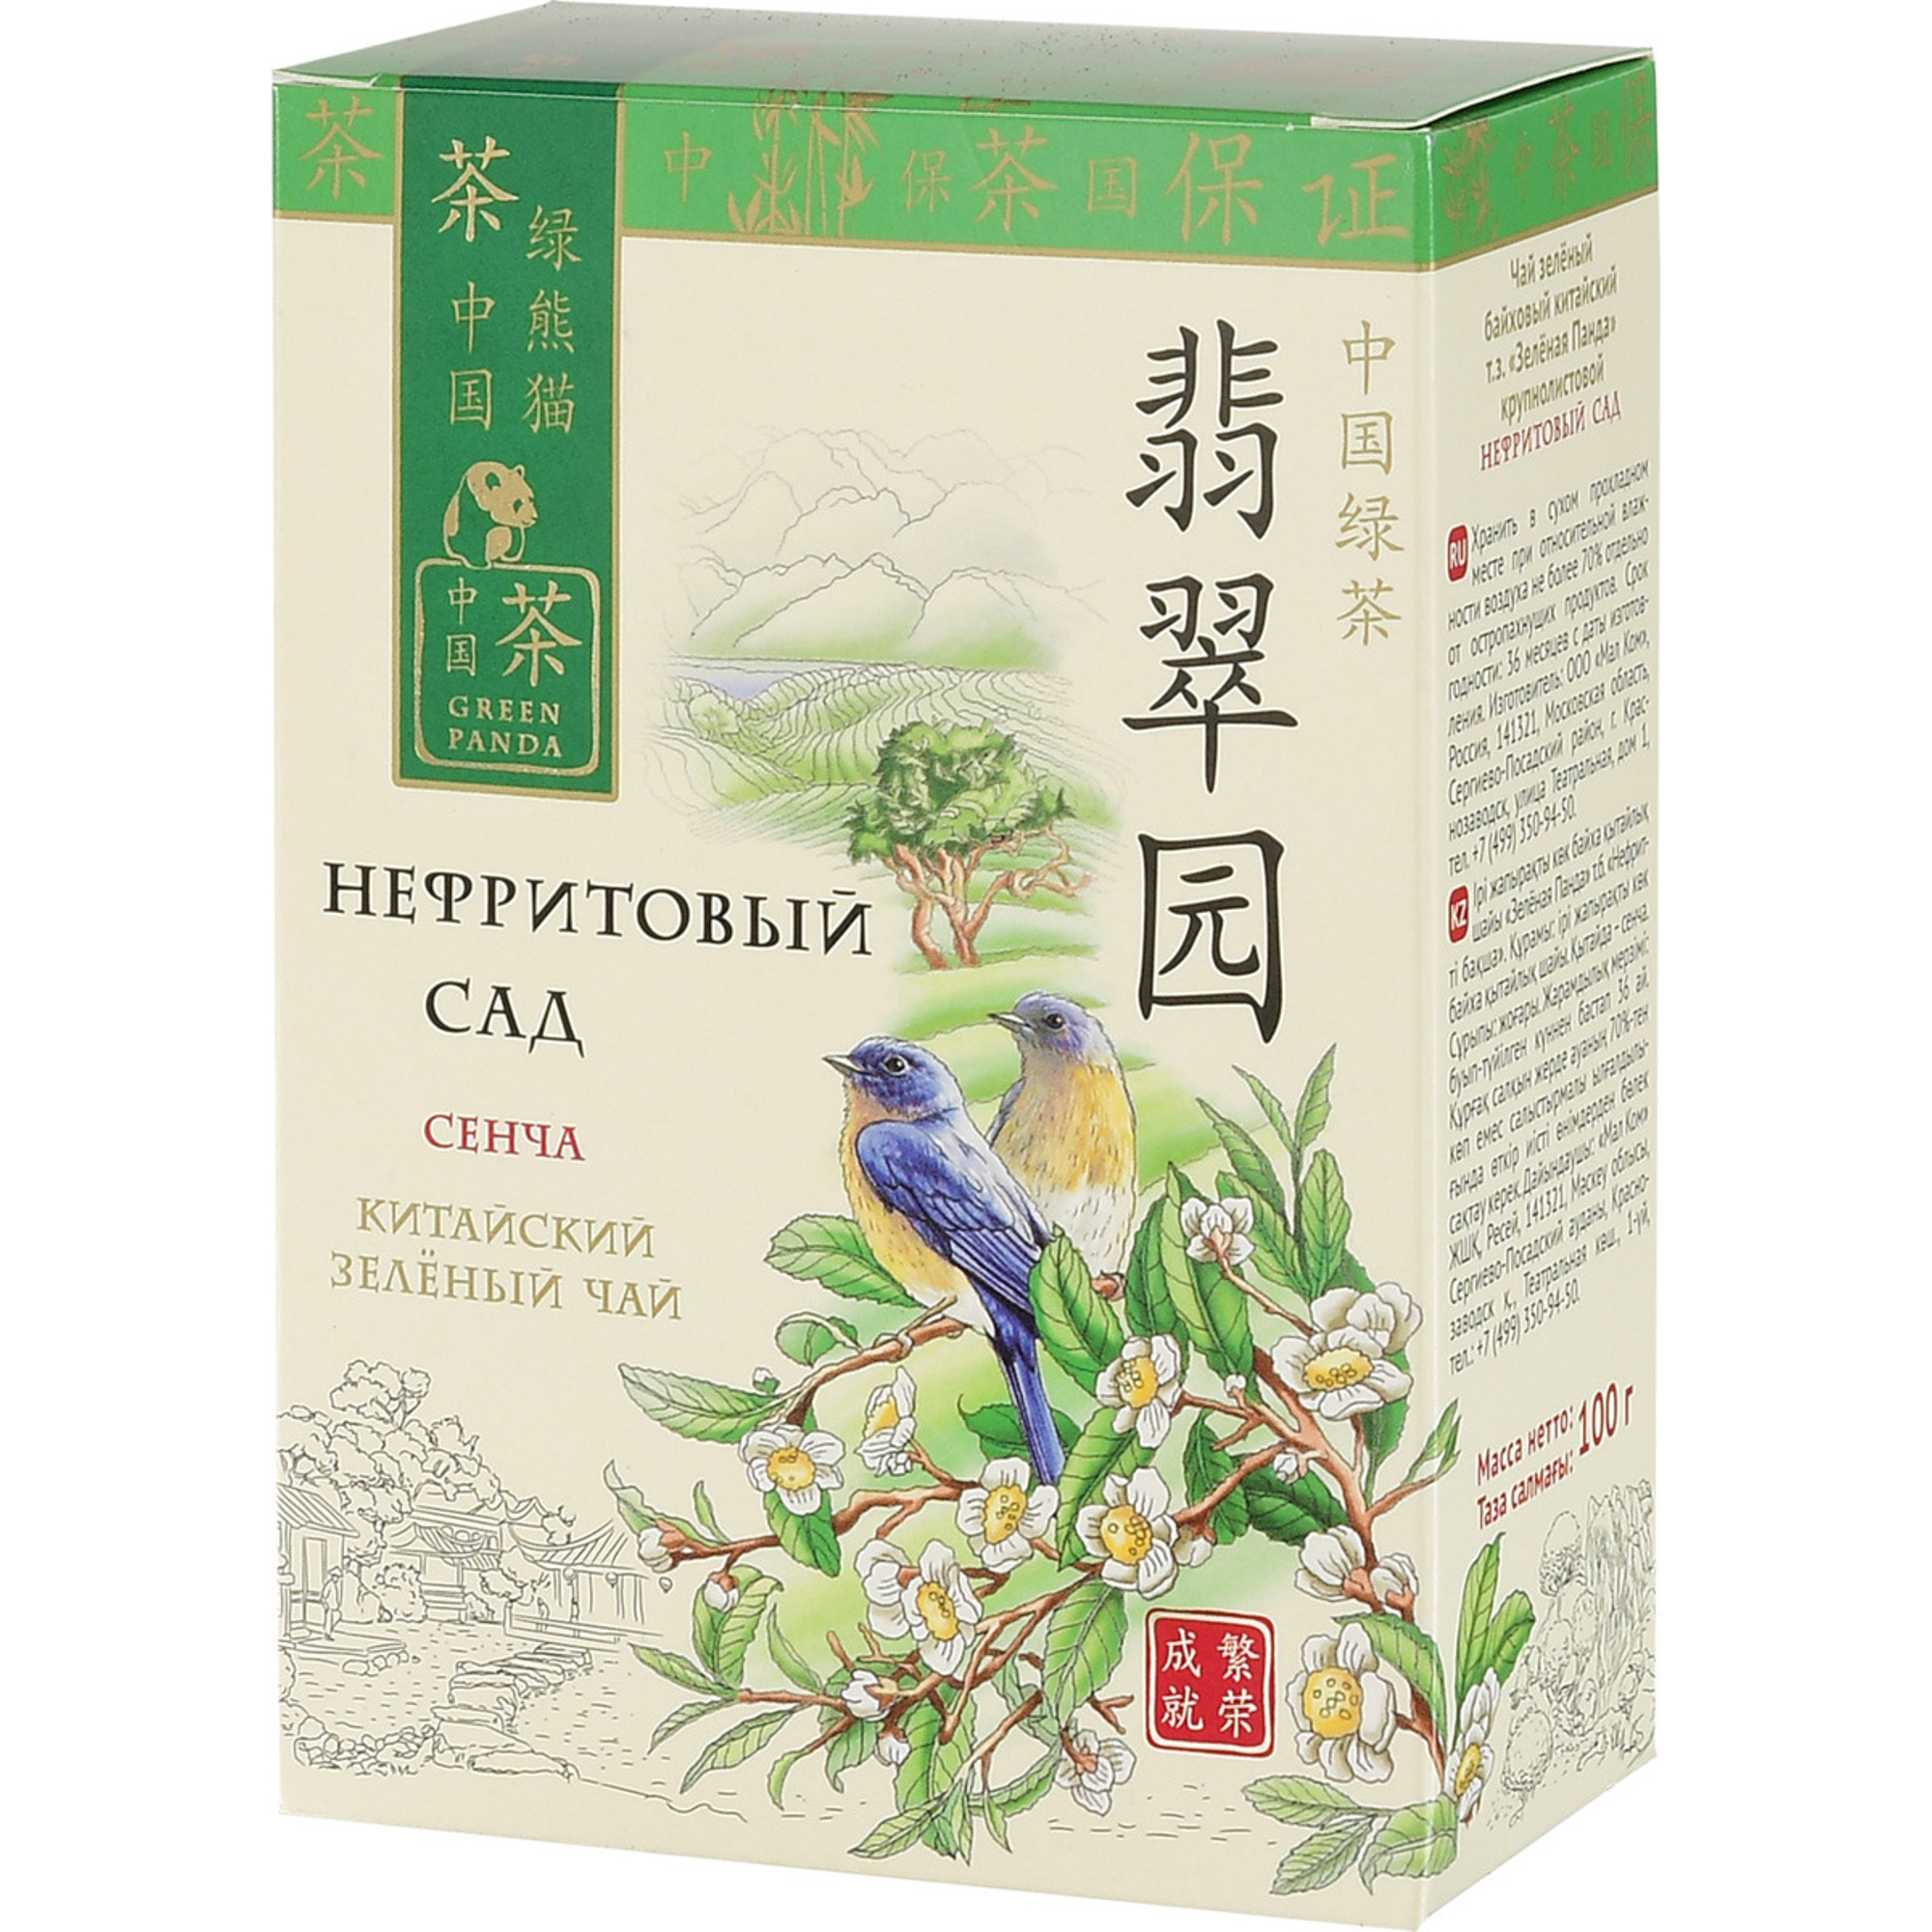 Чай зеленый Зеленая Панда Нефритовый сад Сенча листовой 100 г цена и фото